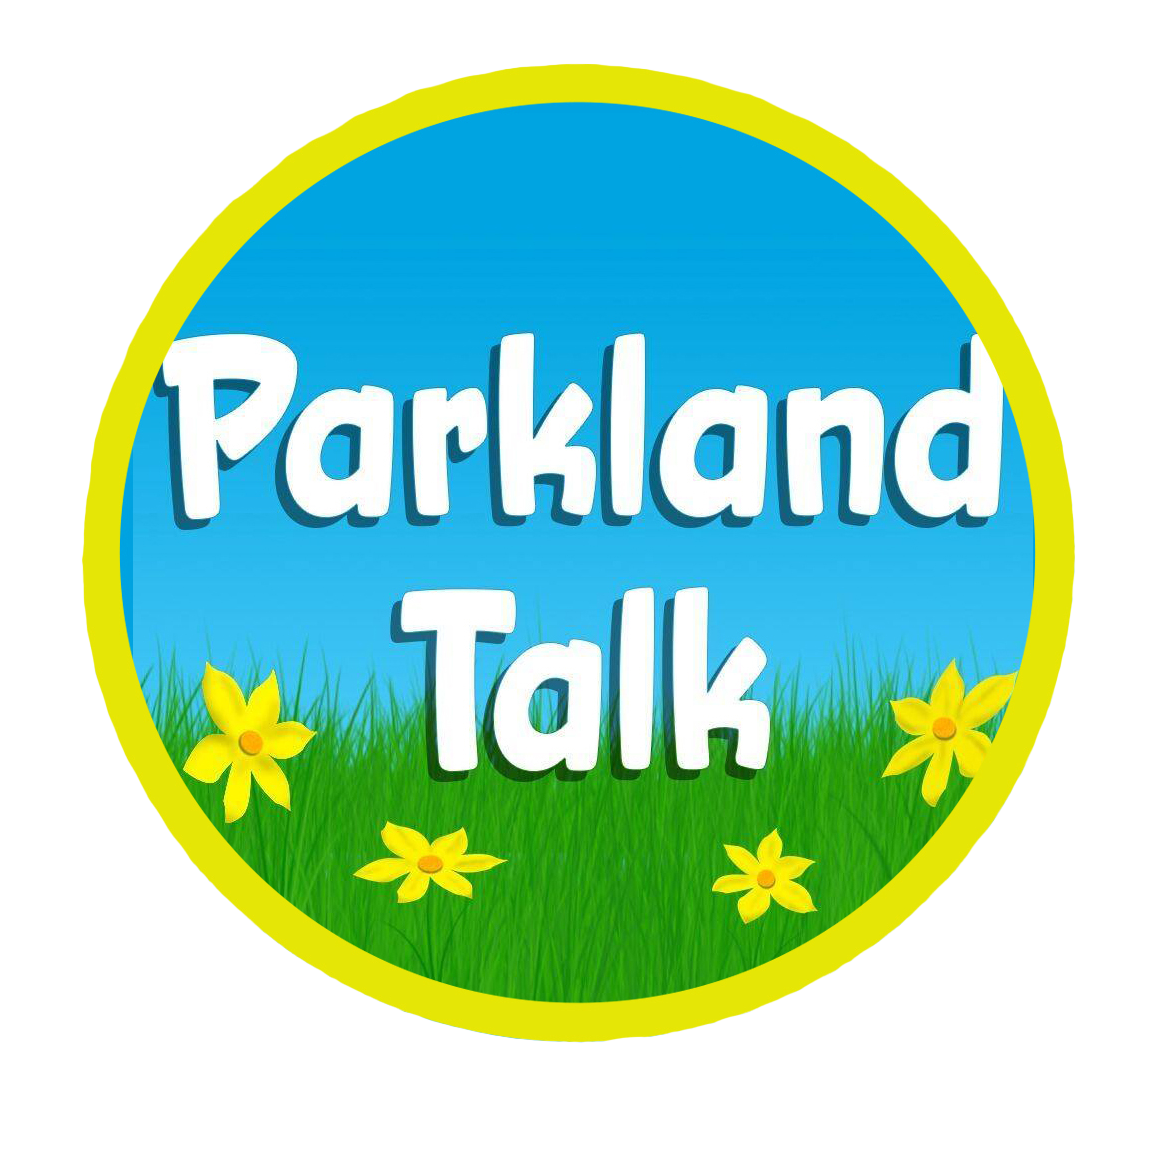 Parkland Talk